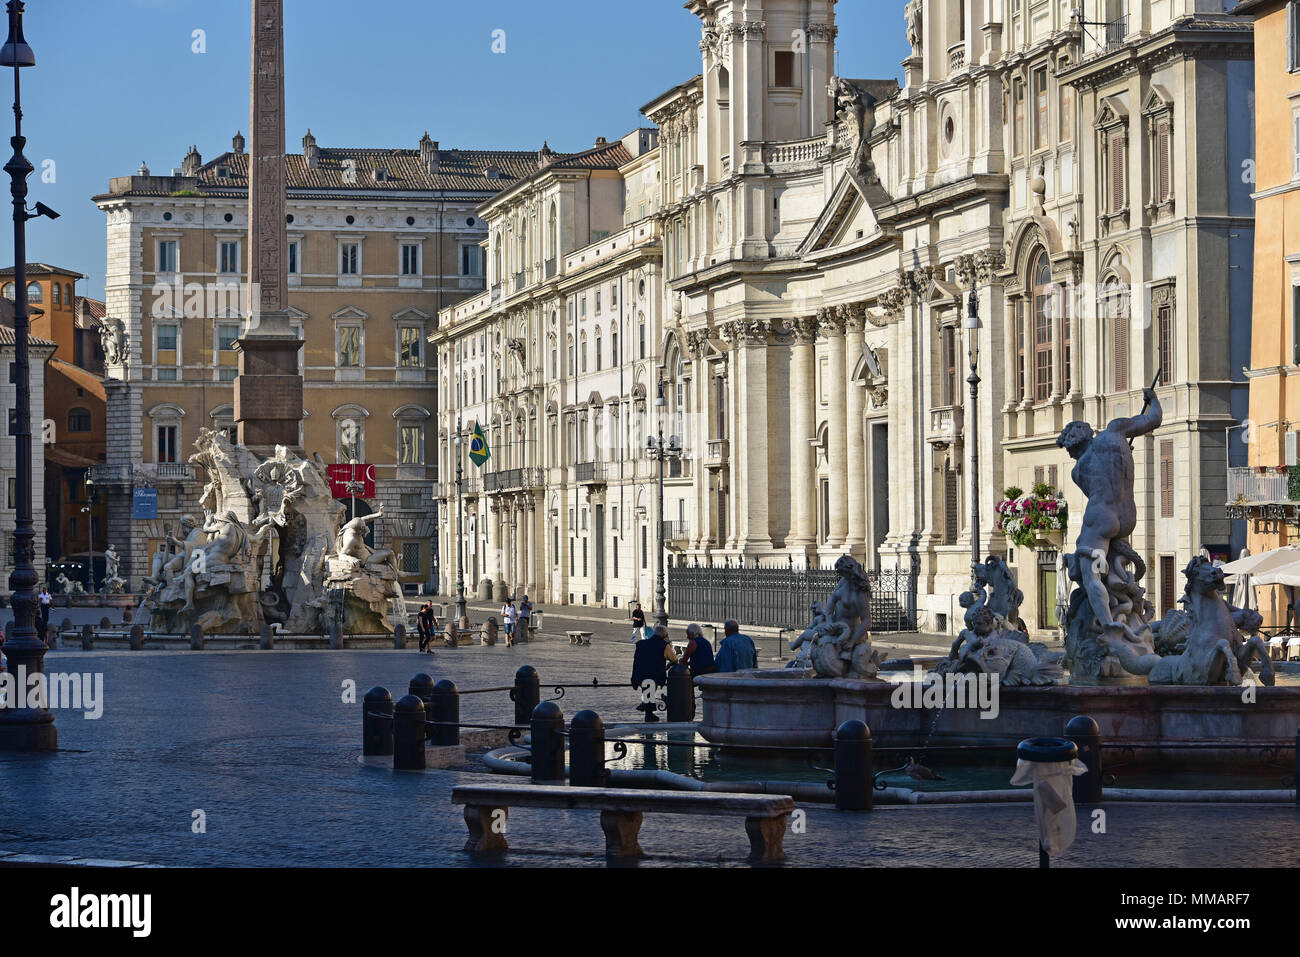 Piazza Navona en lumière du matin, avec élévation ouest de la place et la fontaine de Neptune à droite, Fontaine des quatre rives gauche, Rome, Italie Banque D'Images